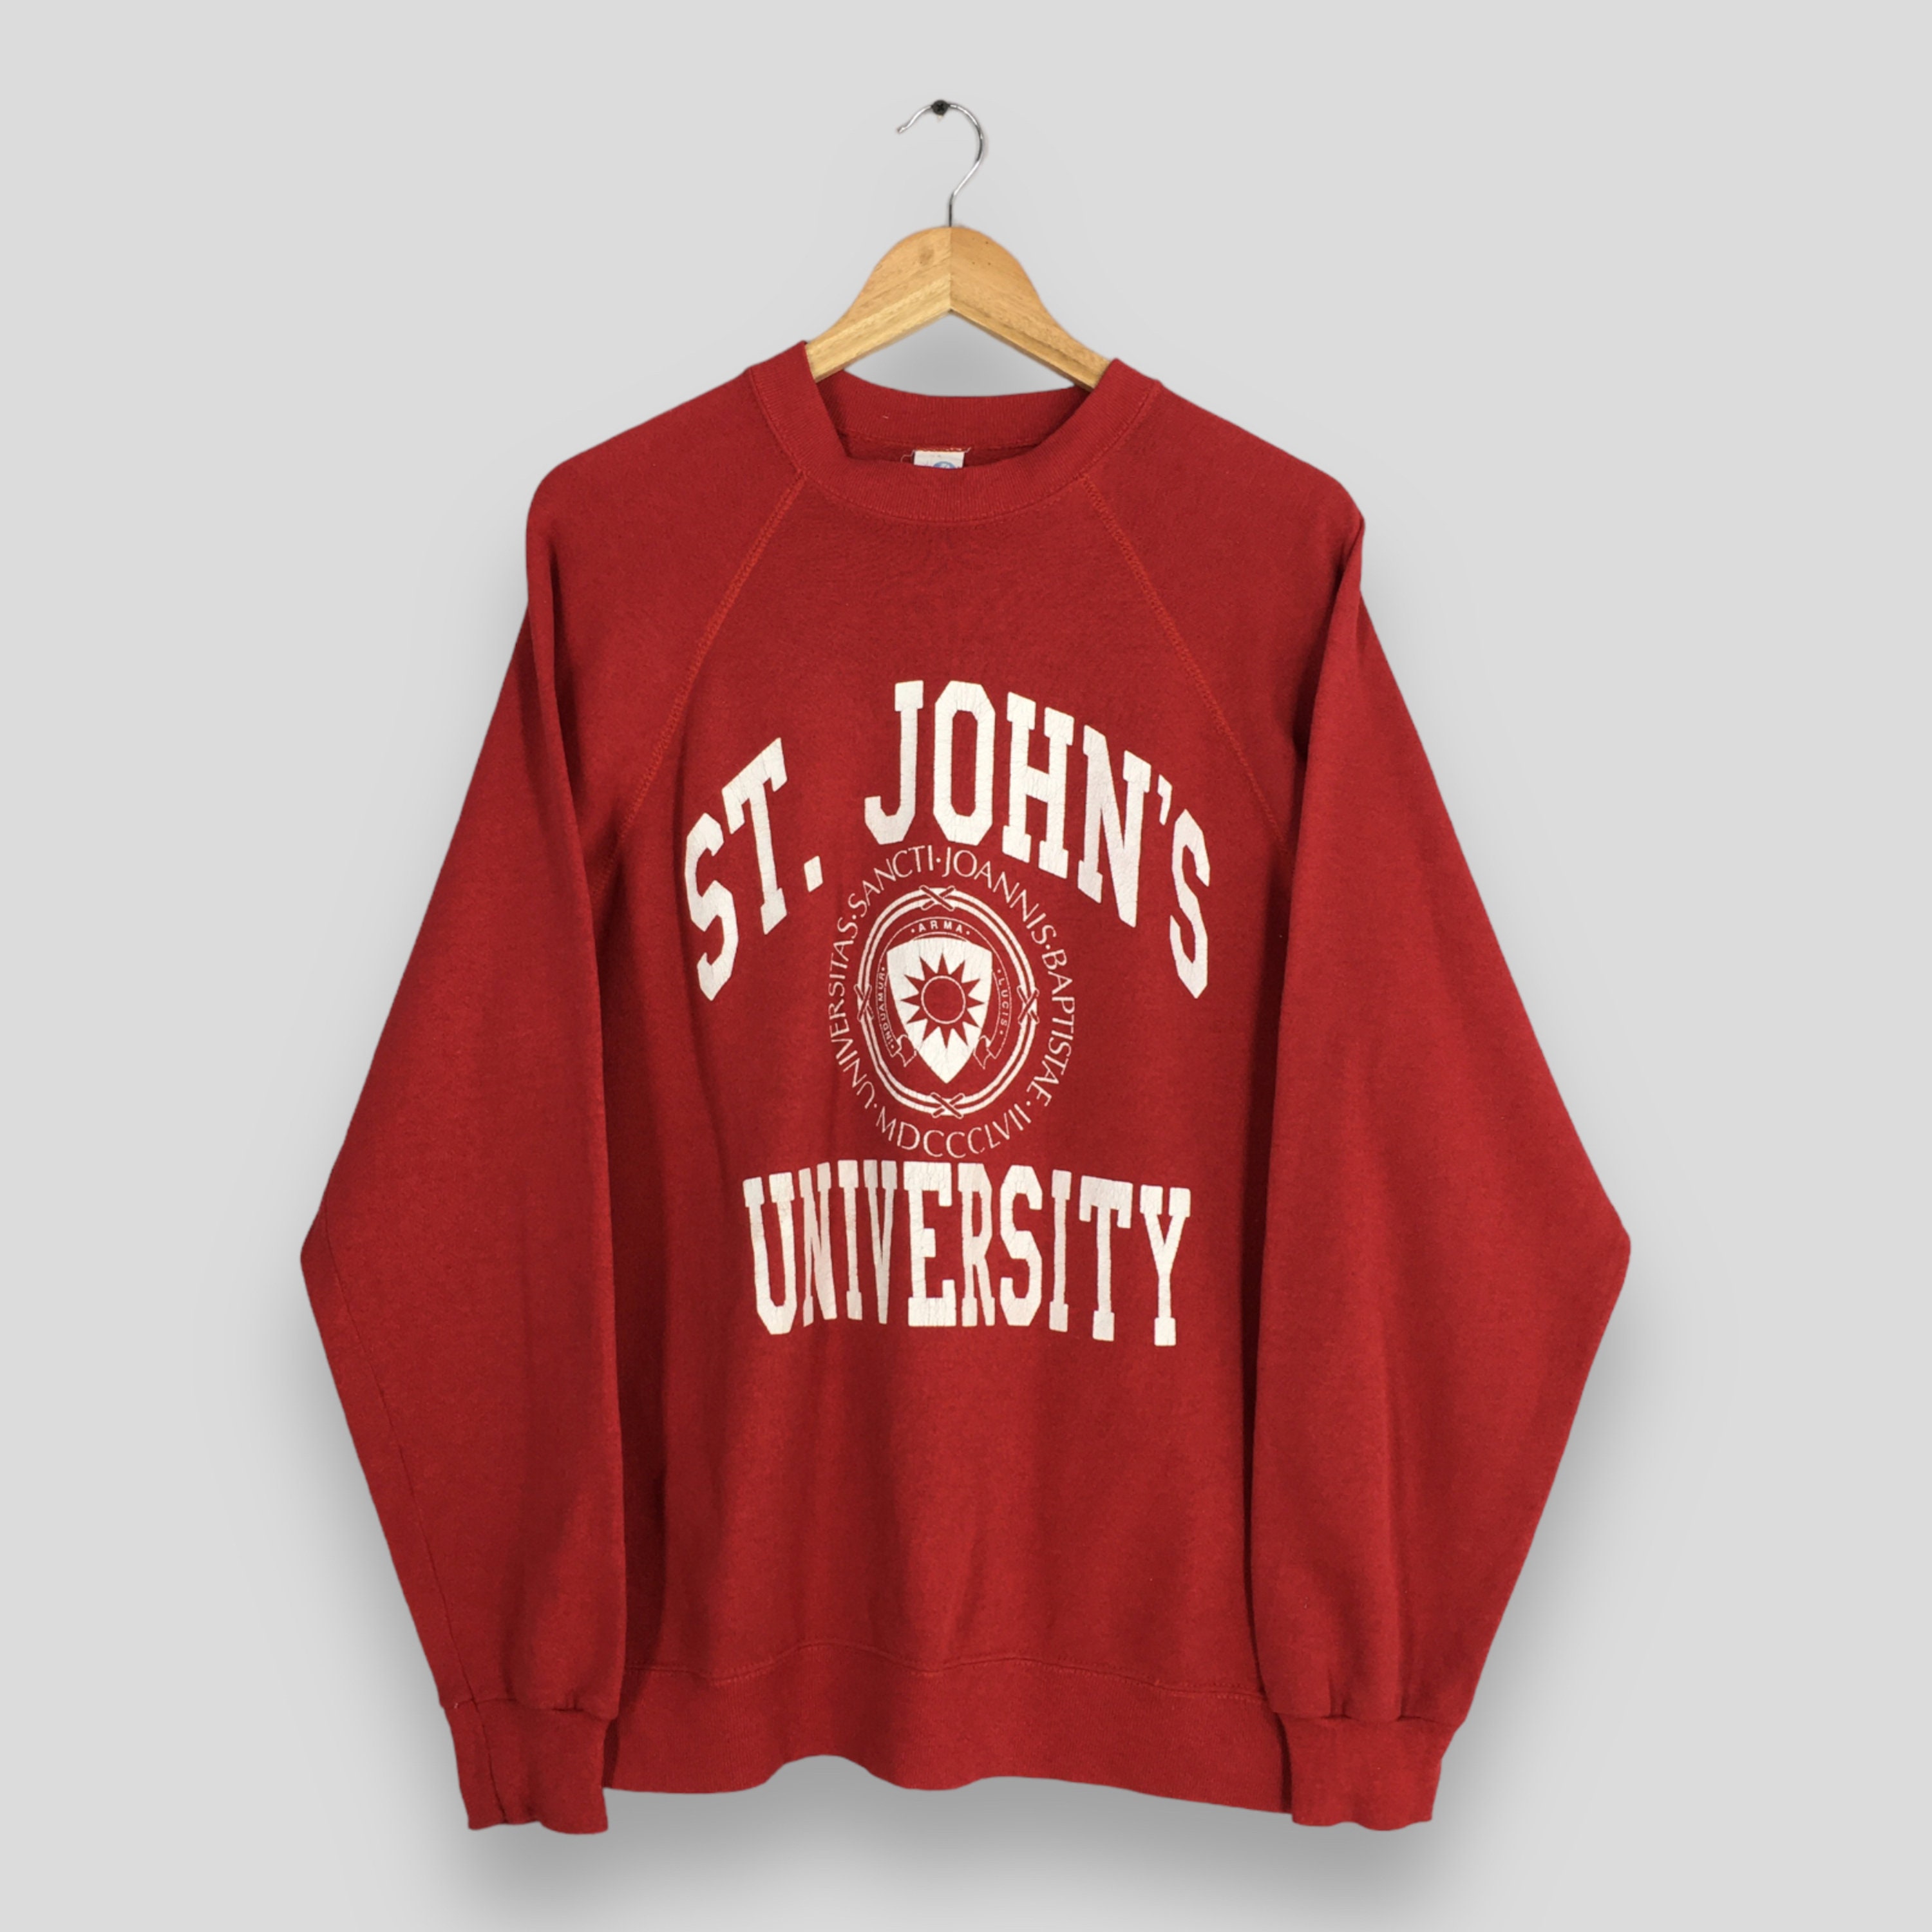 Vintage St.John's University Hoodie 70s/80s era - Depop